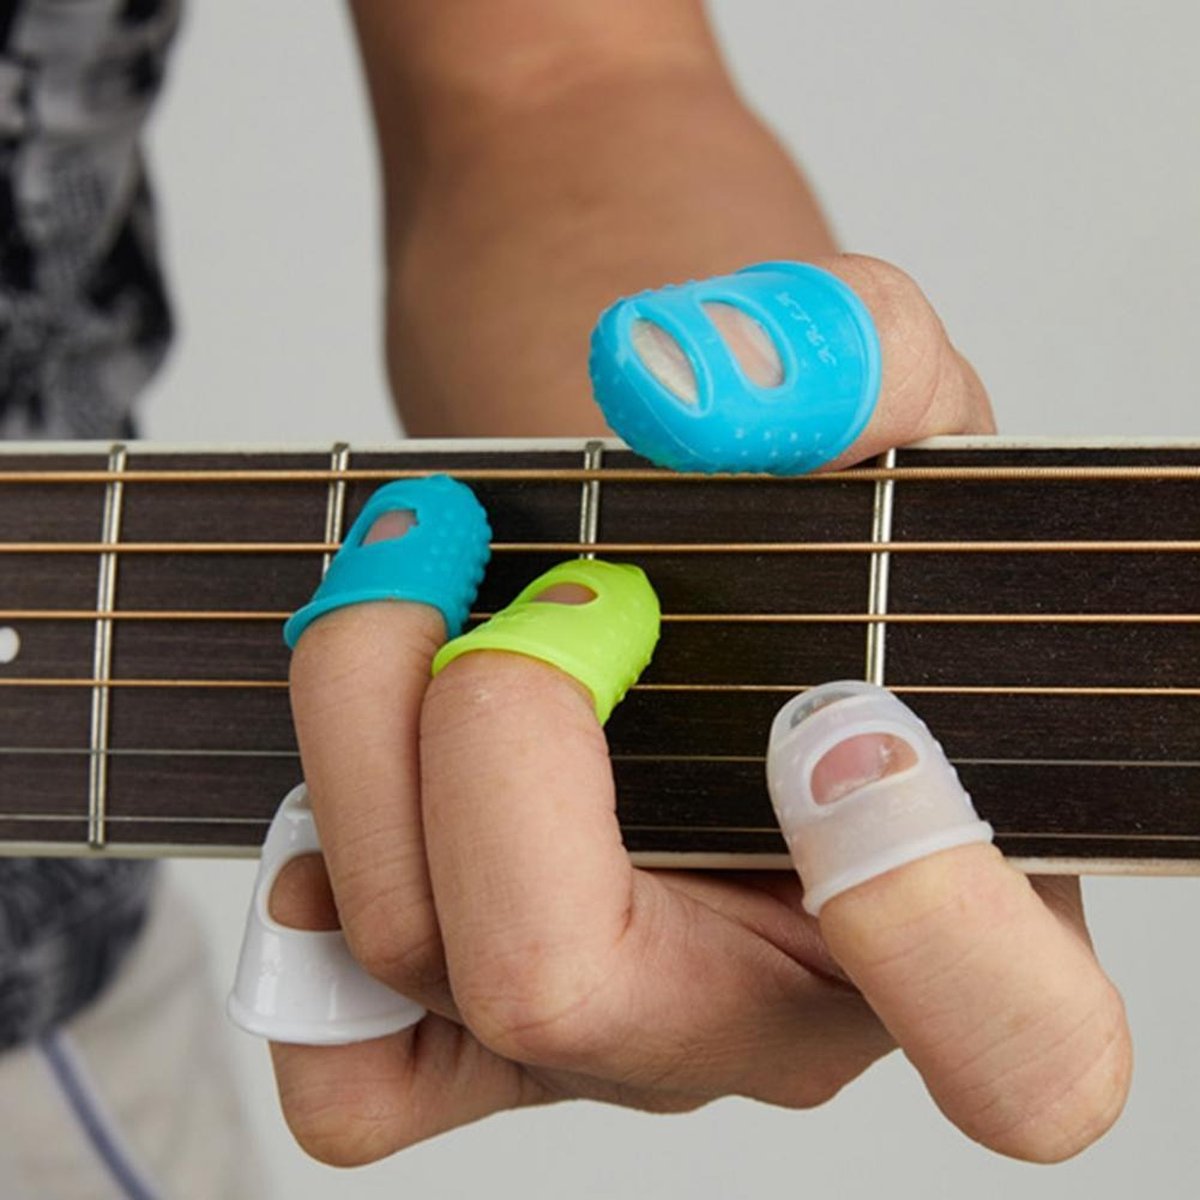 4 pièces/ensemble Silicone guitare Protection du bout des doigts